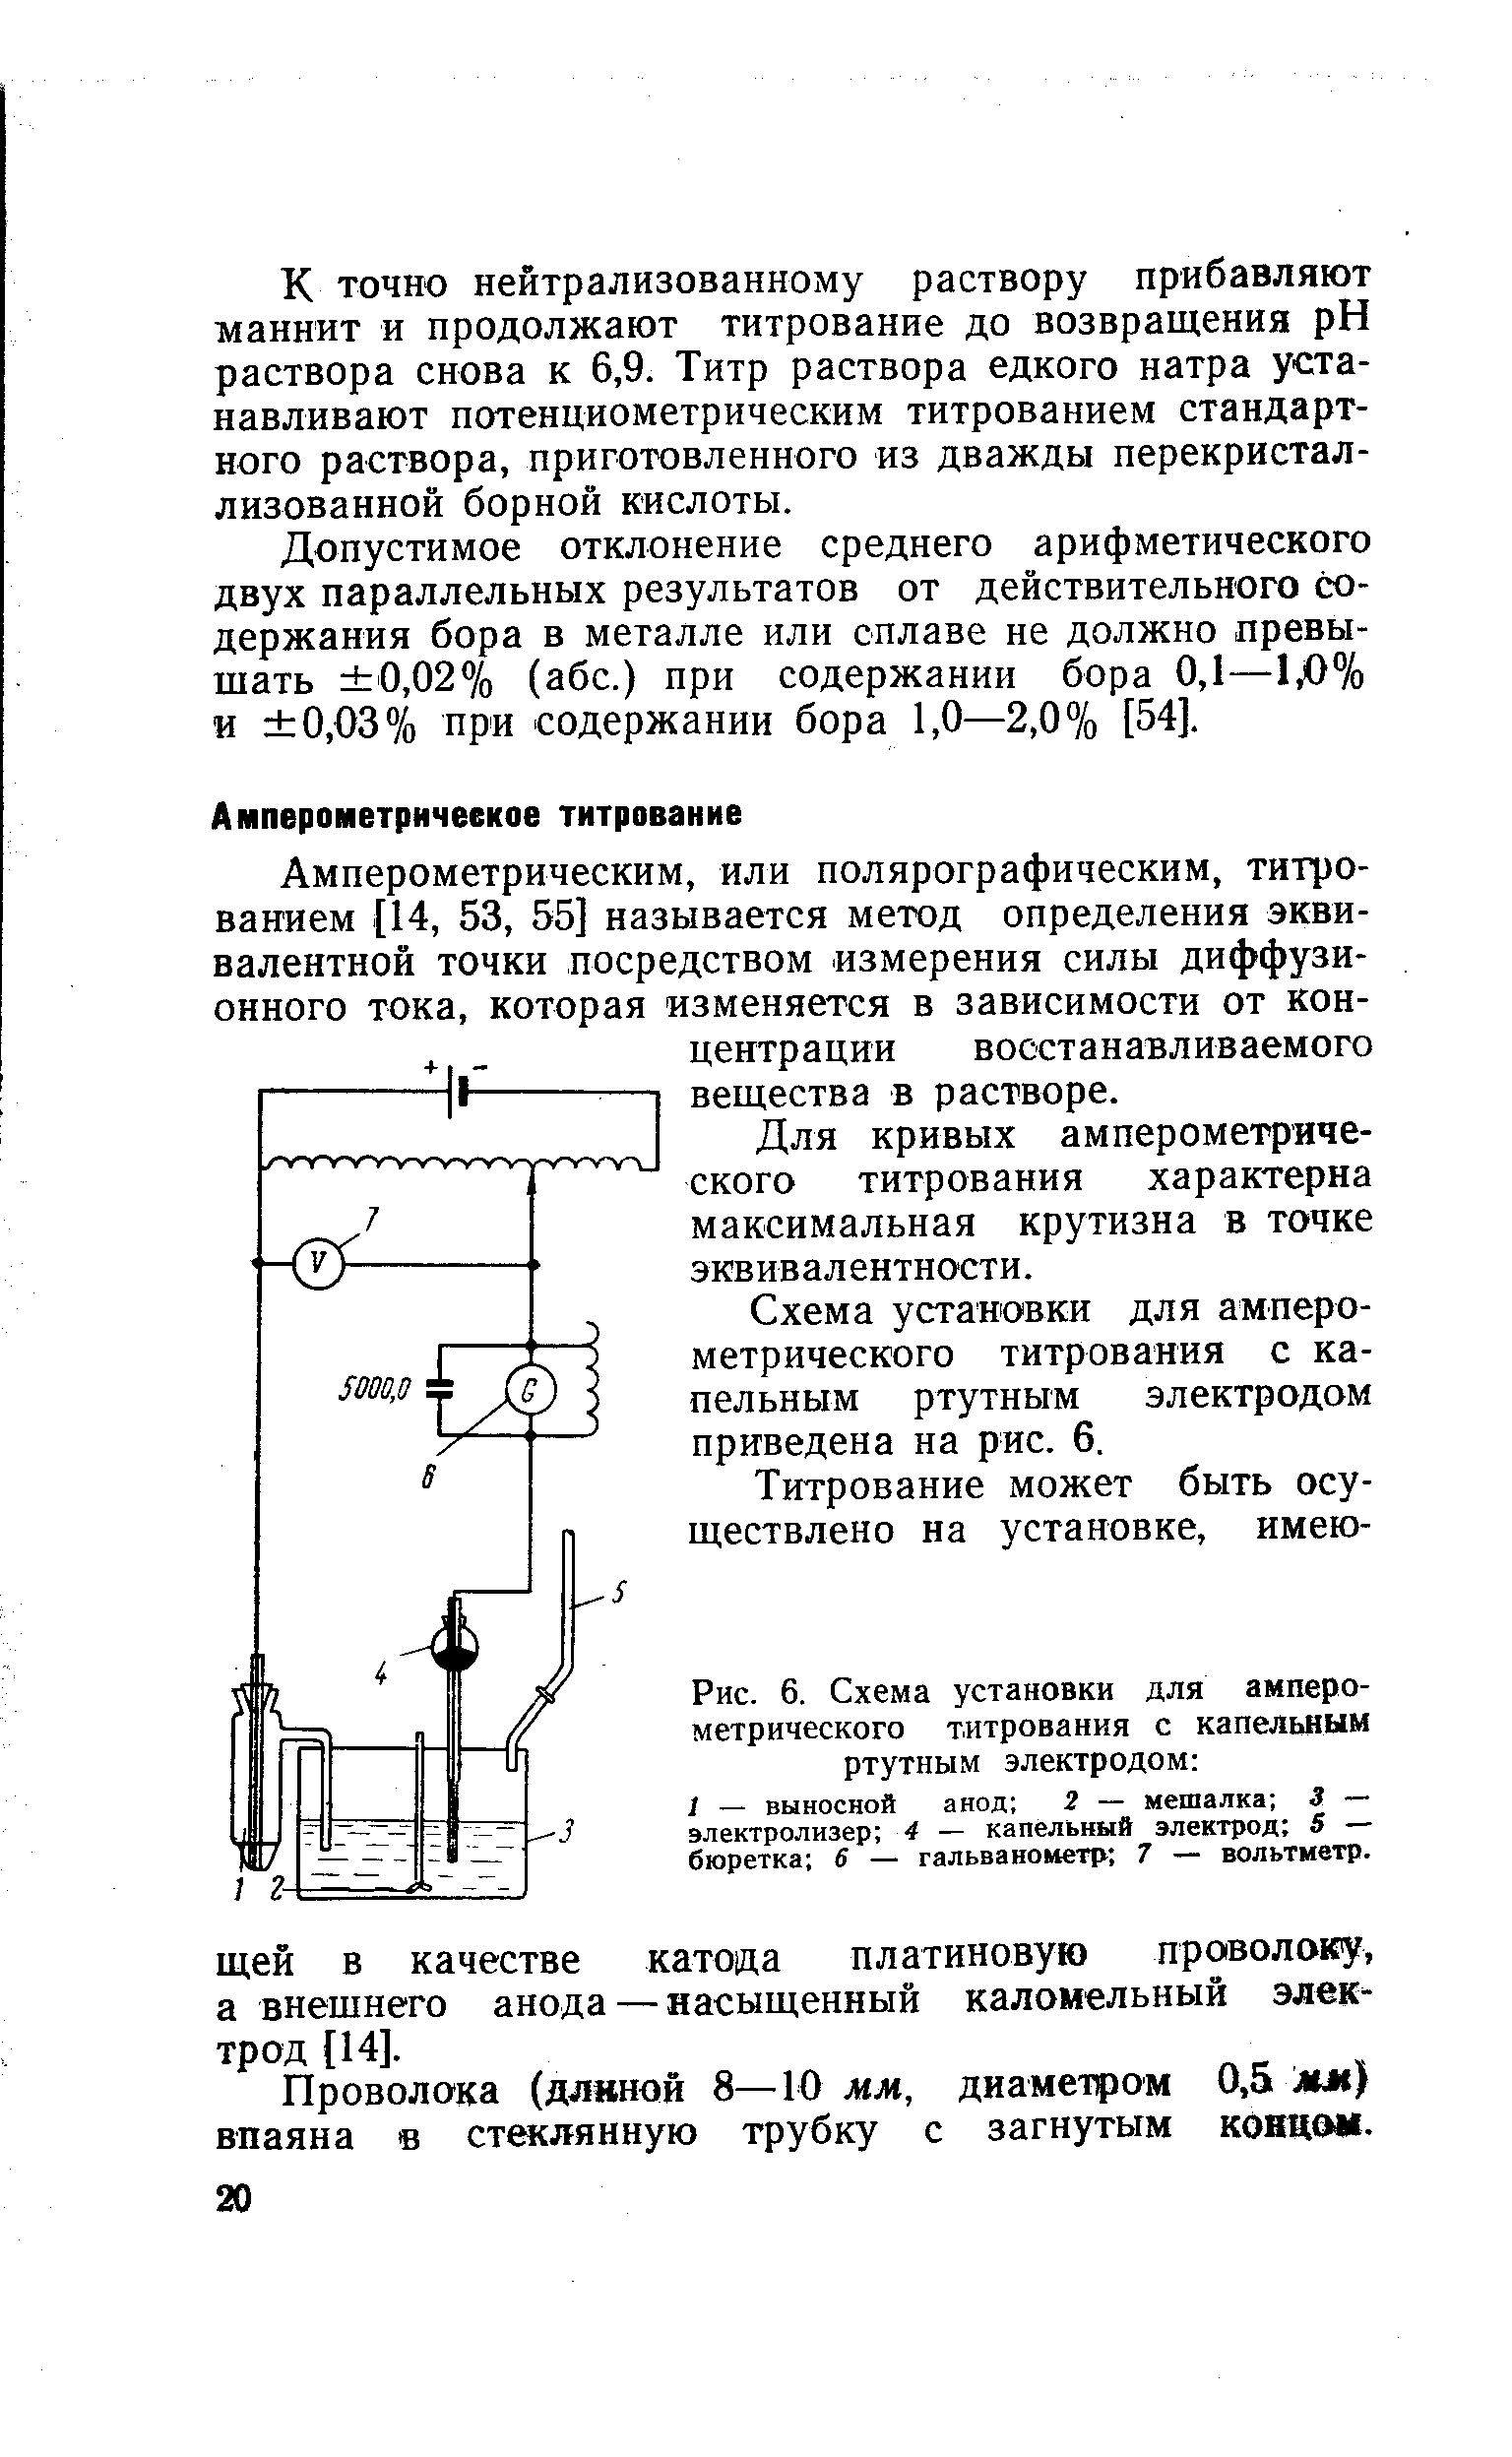 Схема установки для амперометрического титрования с капельным ртутным электродом приведена на рис. 6.